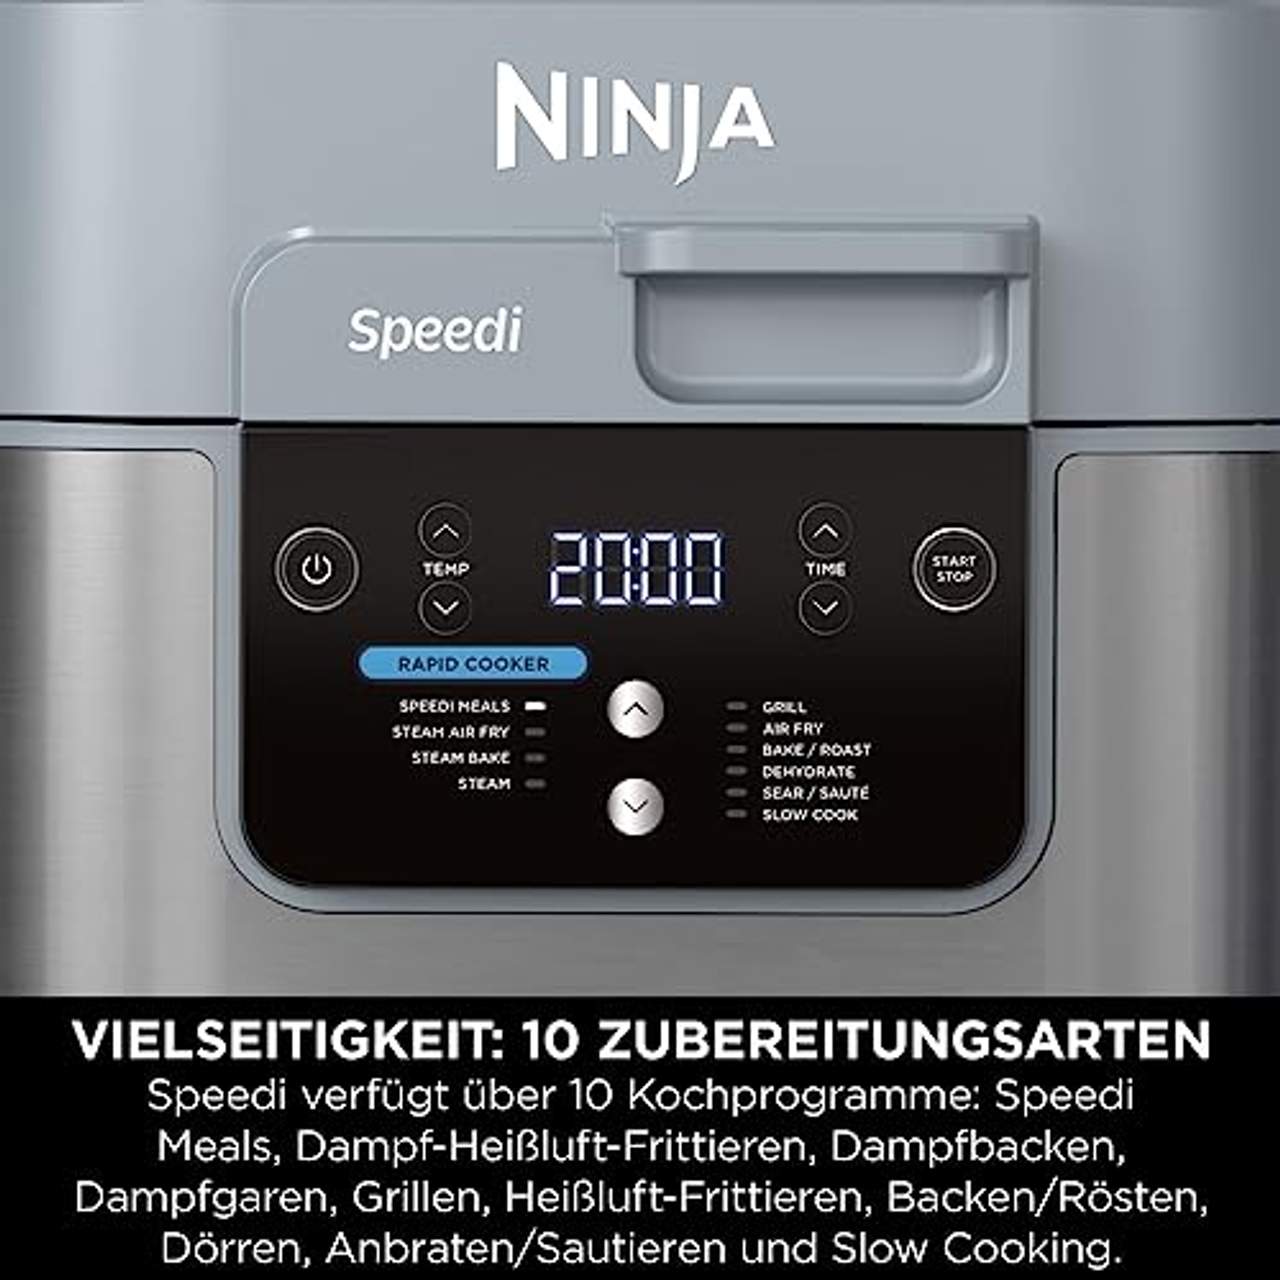 Ninja Speedi Multikocher 5,7L